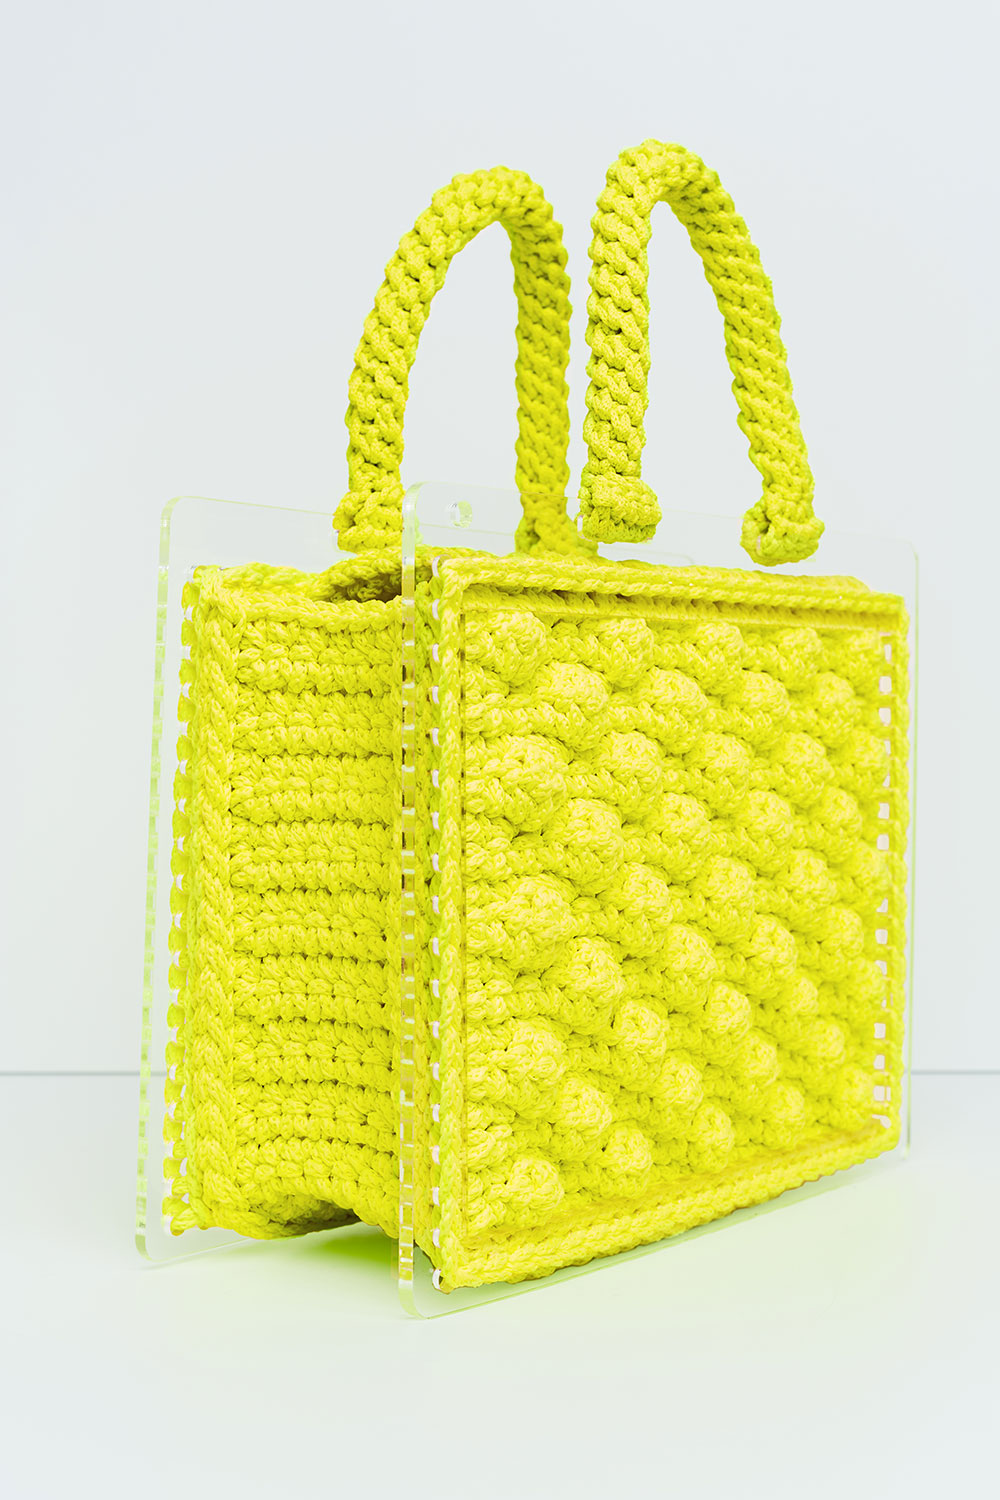 500 P/L Plexiglass Bag in Yellow